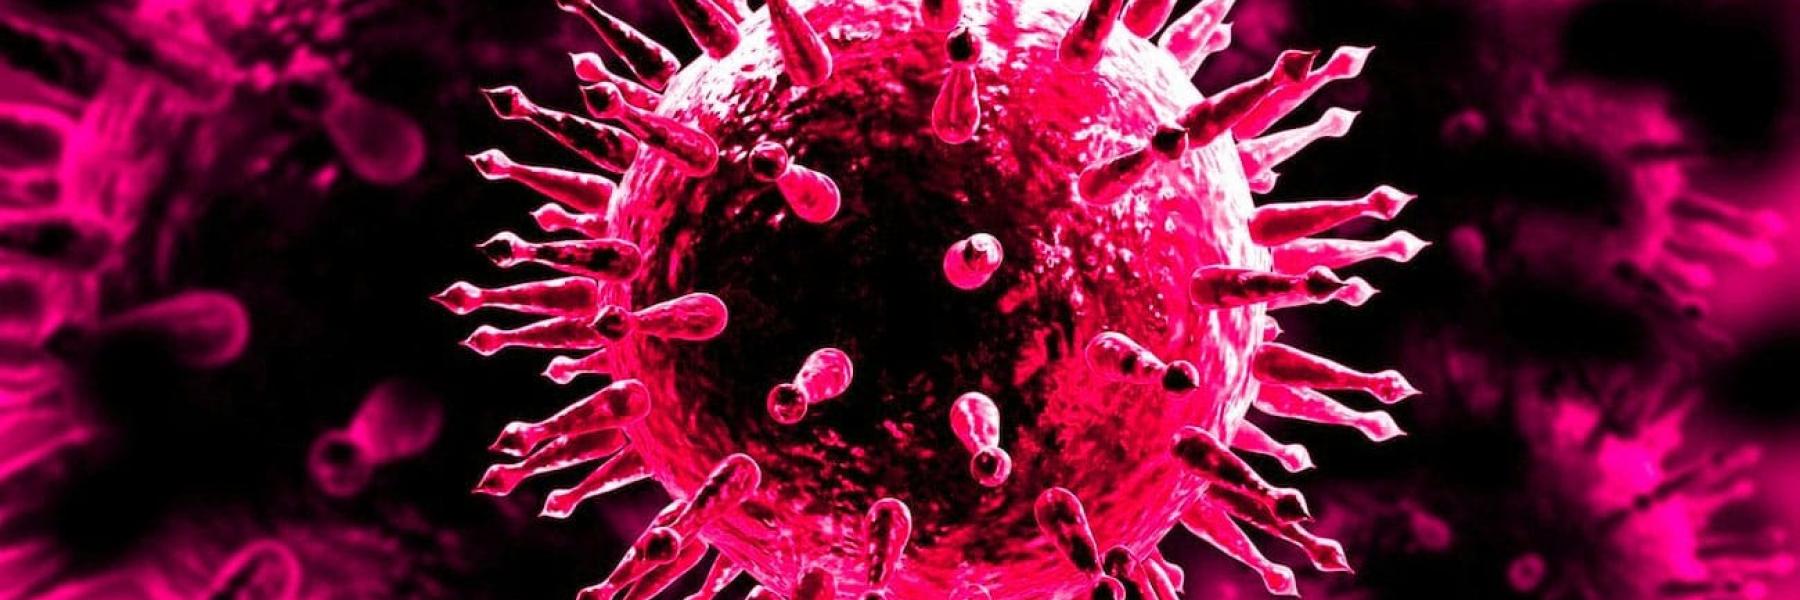 العلماء يحذرون: 850 ألف فيروس غير مكتشف في الحيوانات يمكن أن يصيب البشر